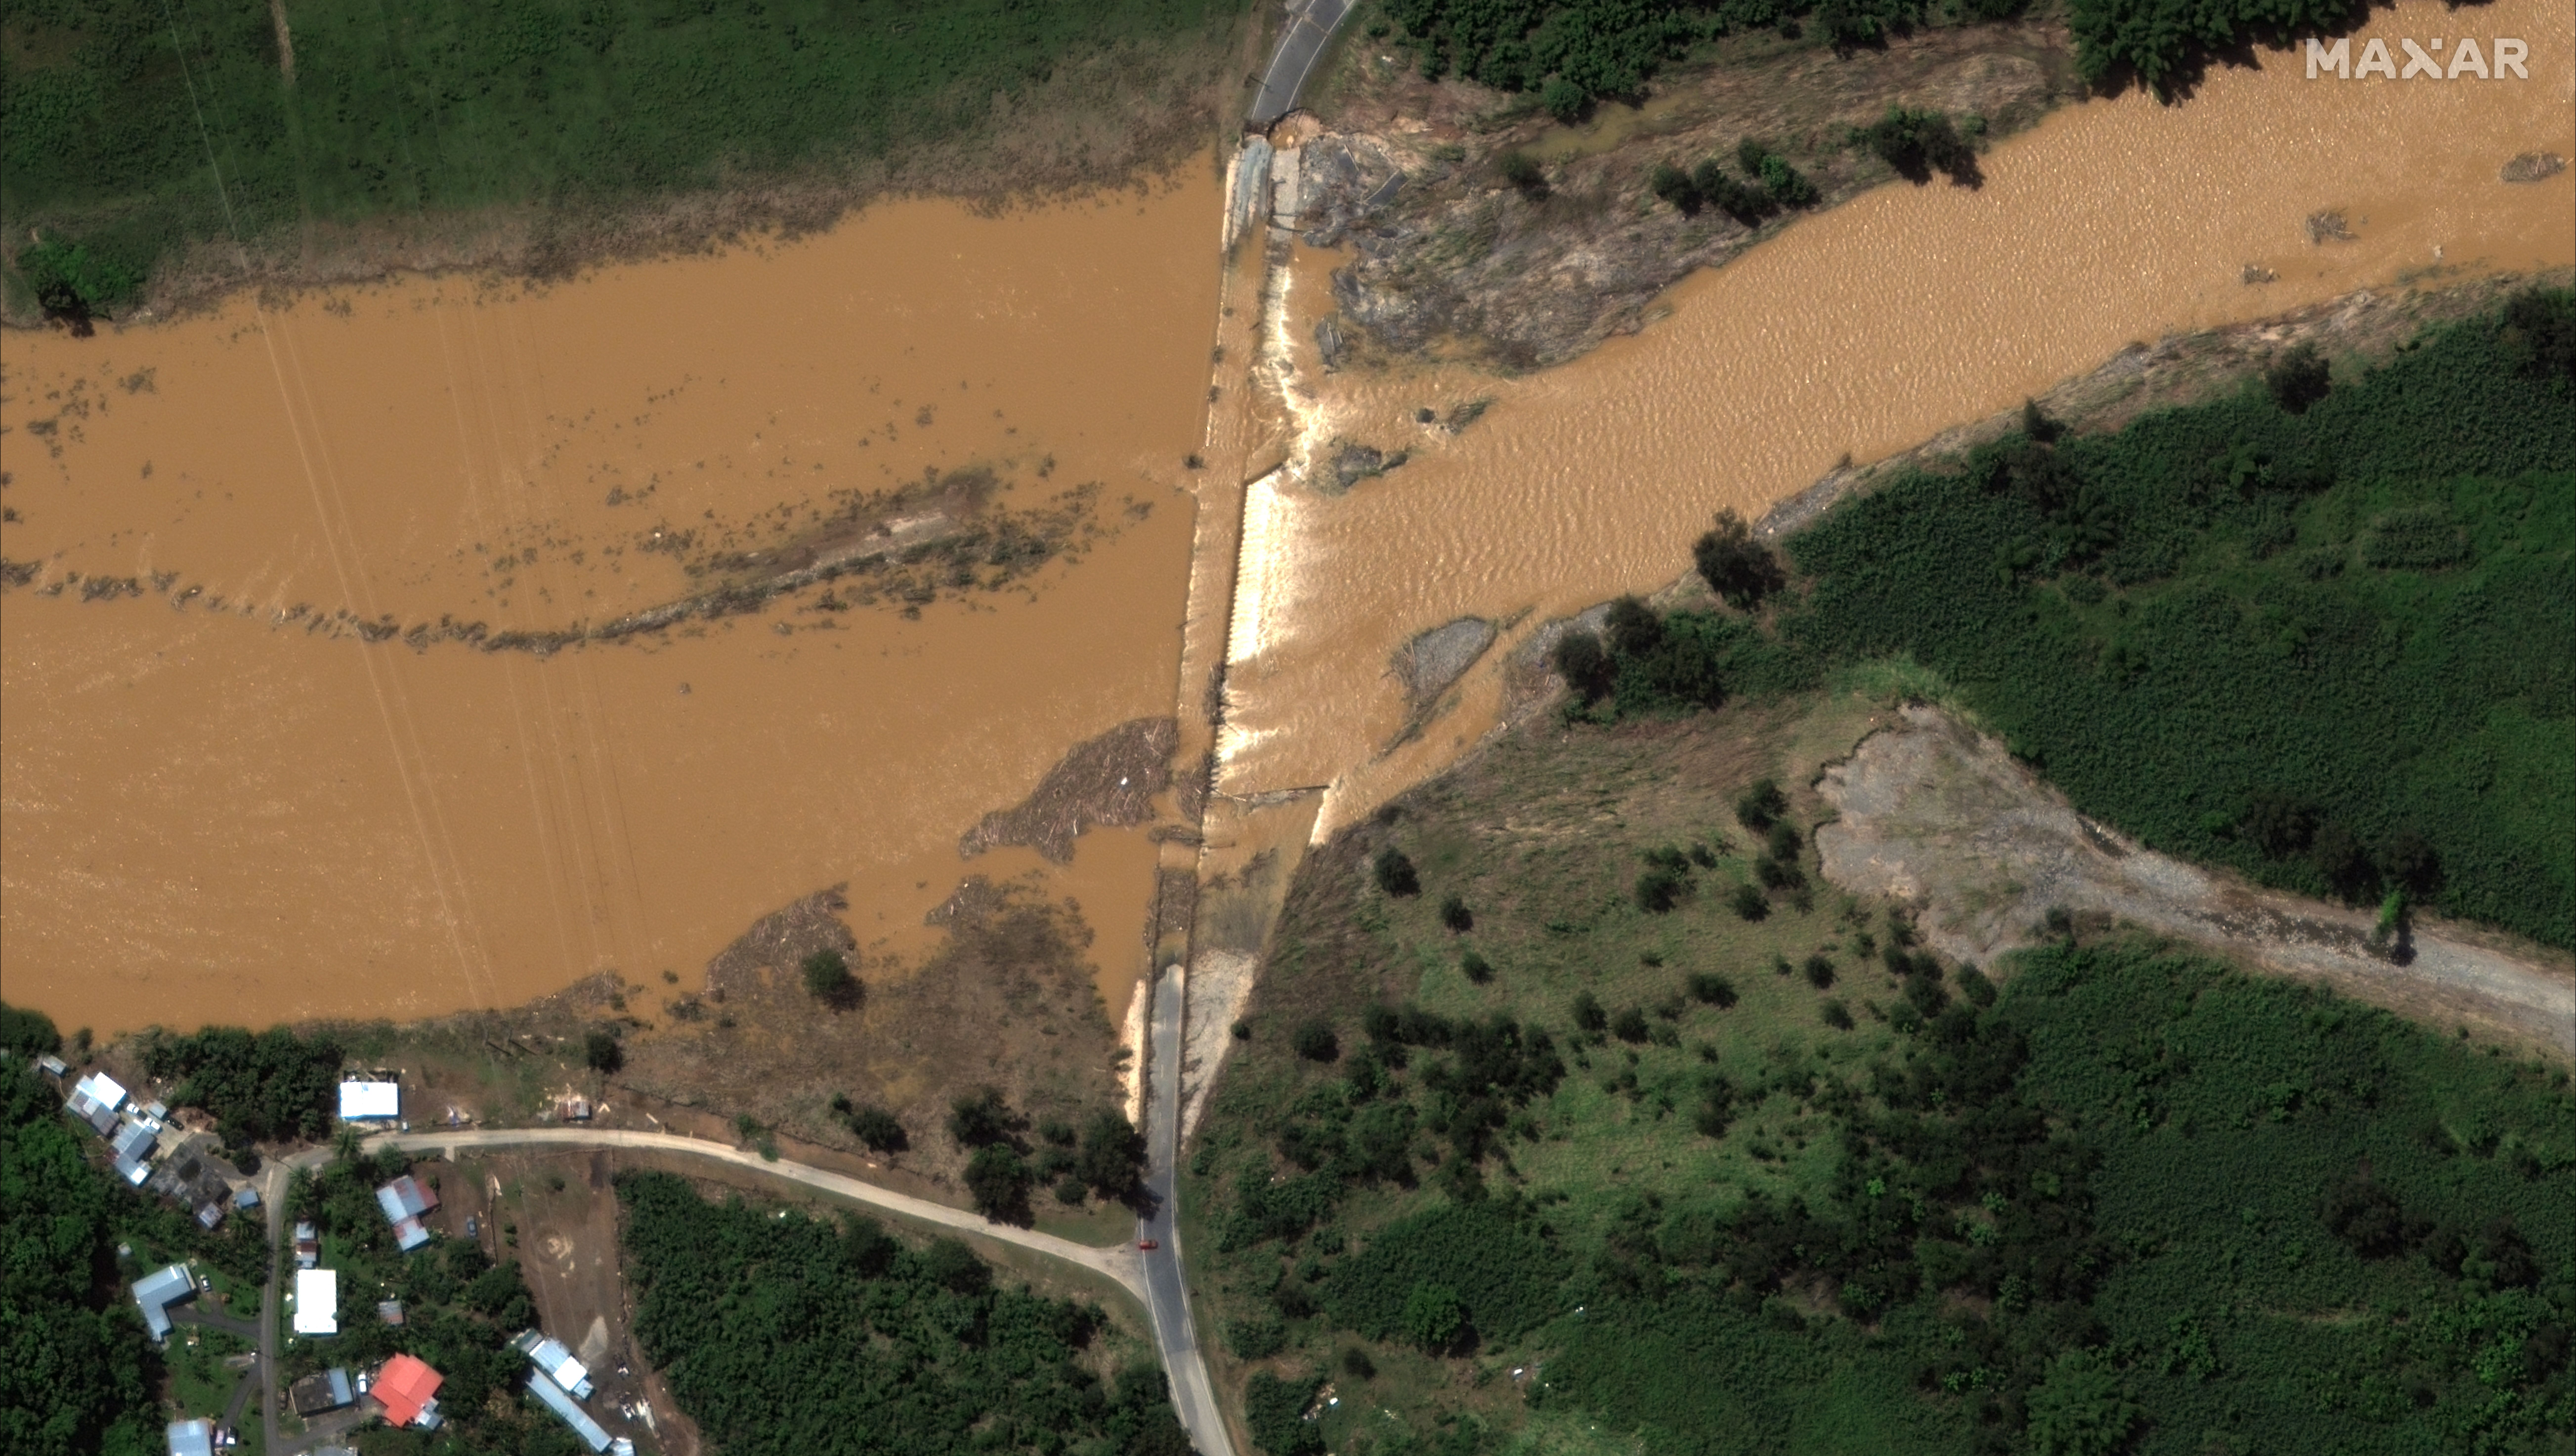 The remains of a bridge in Rio Grande de Arecibo, Puerto Rico, after Hurricane Fiona swept through.